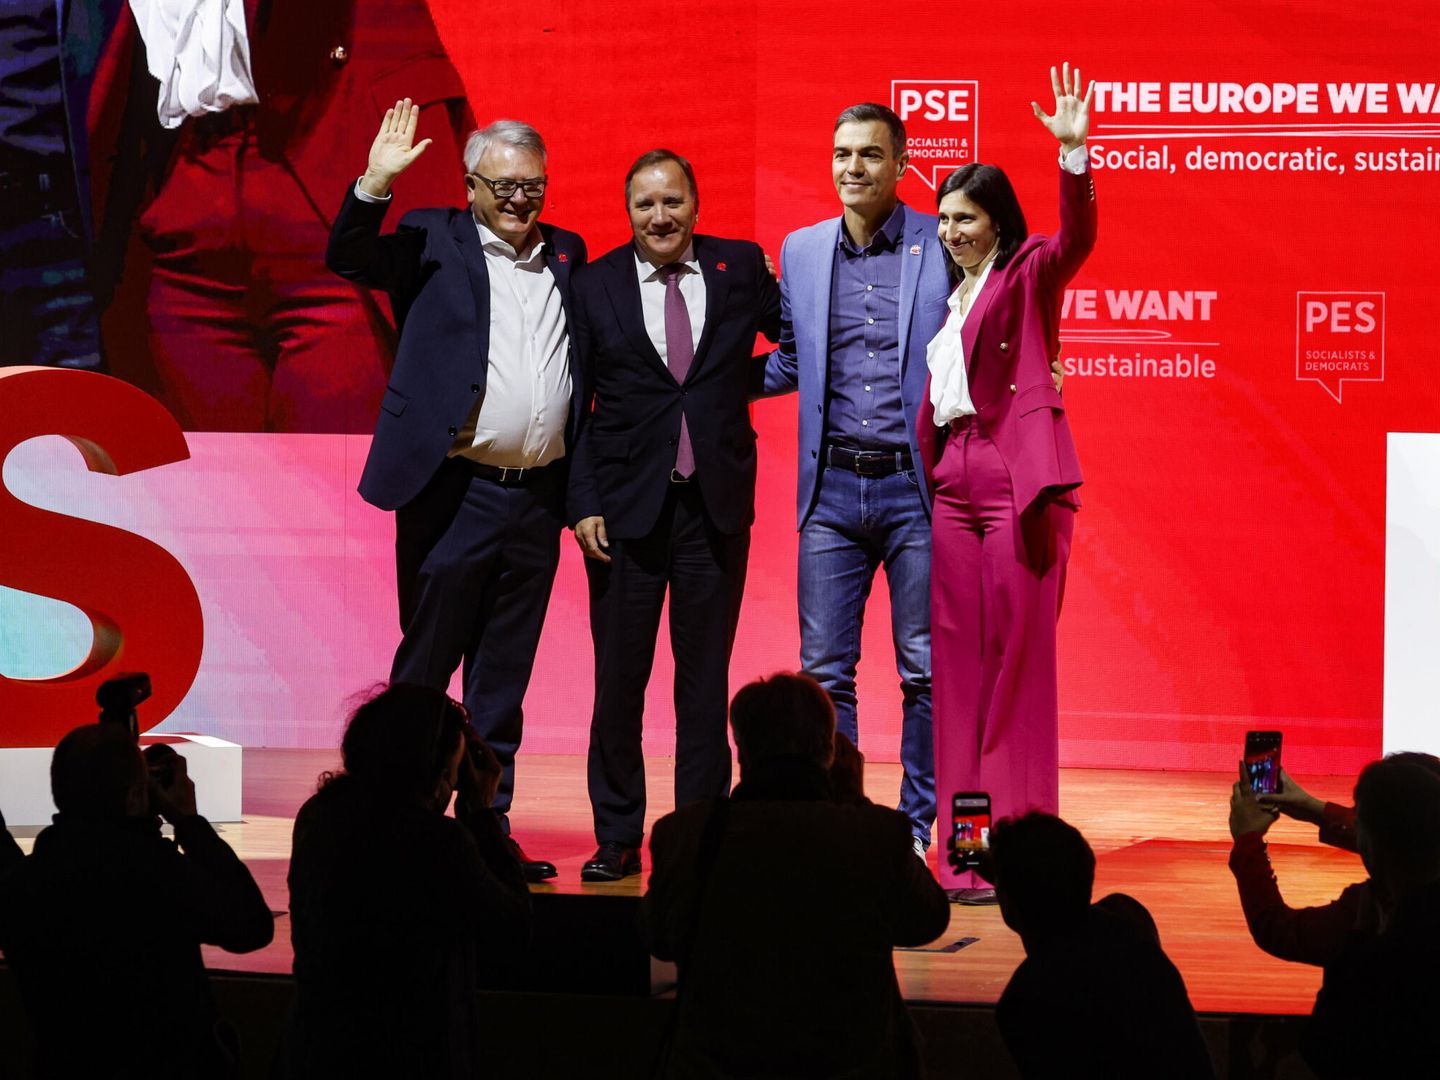 Sánchez, acompañado de la líder del PD junto con el candidato socialdemócrata a las europeas, Nicolas Schmit, y el presidente del PES, Stefan Löfven. (EFE)